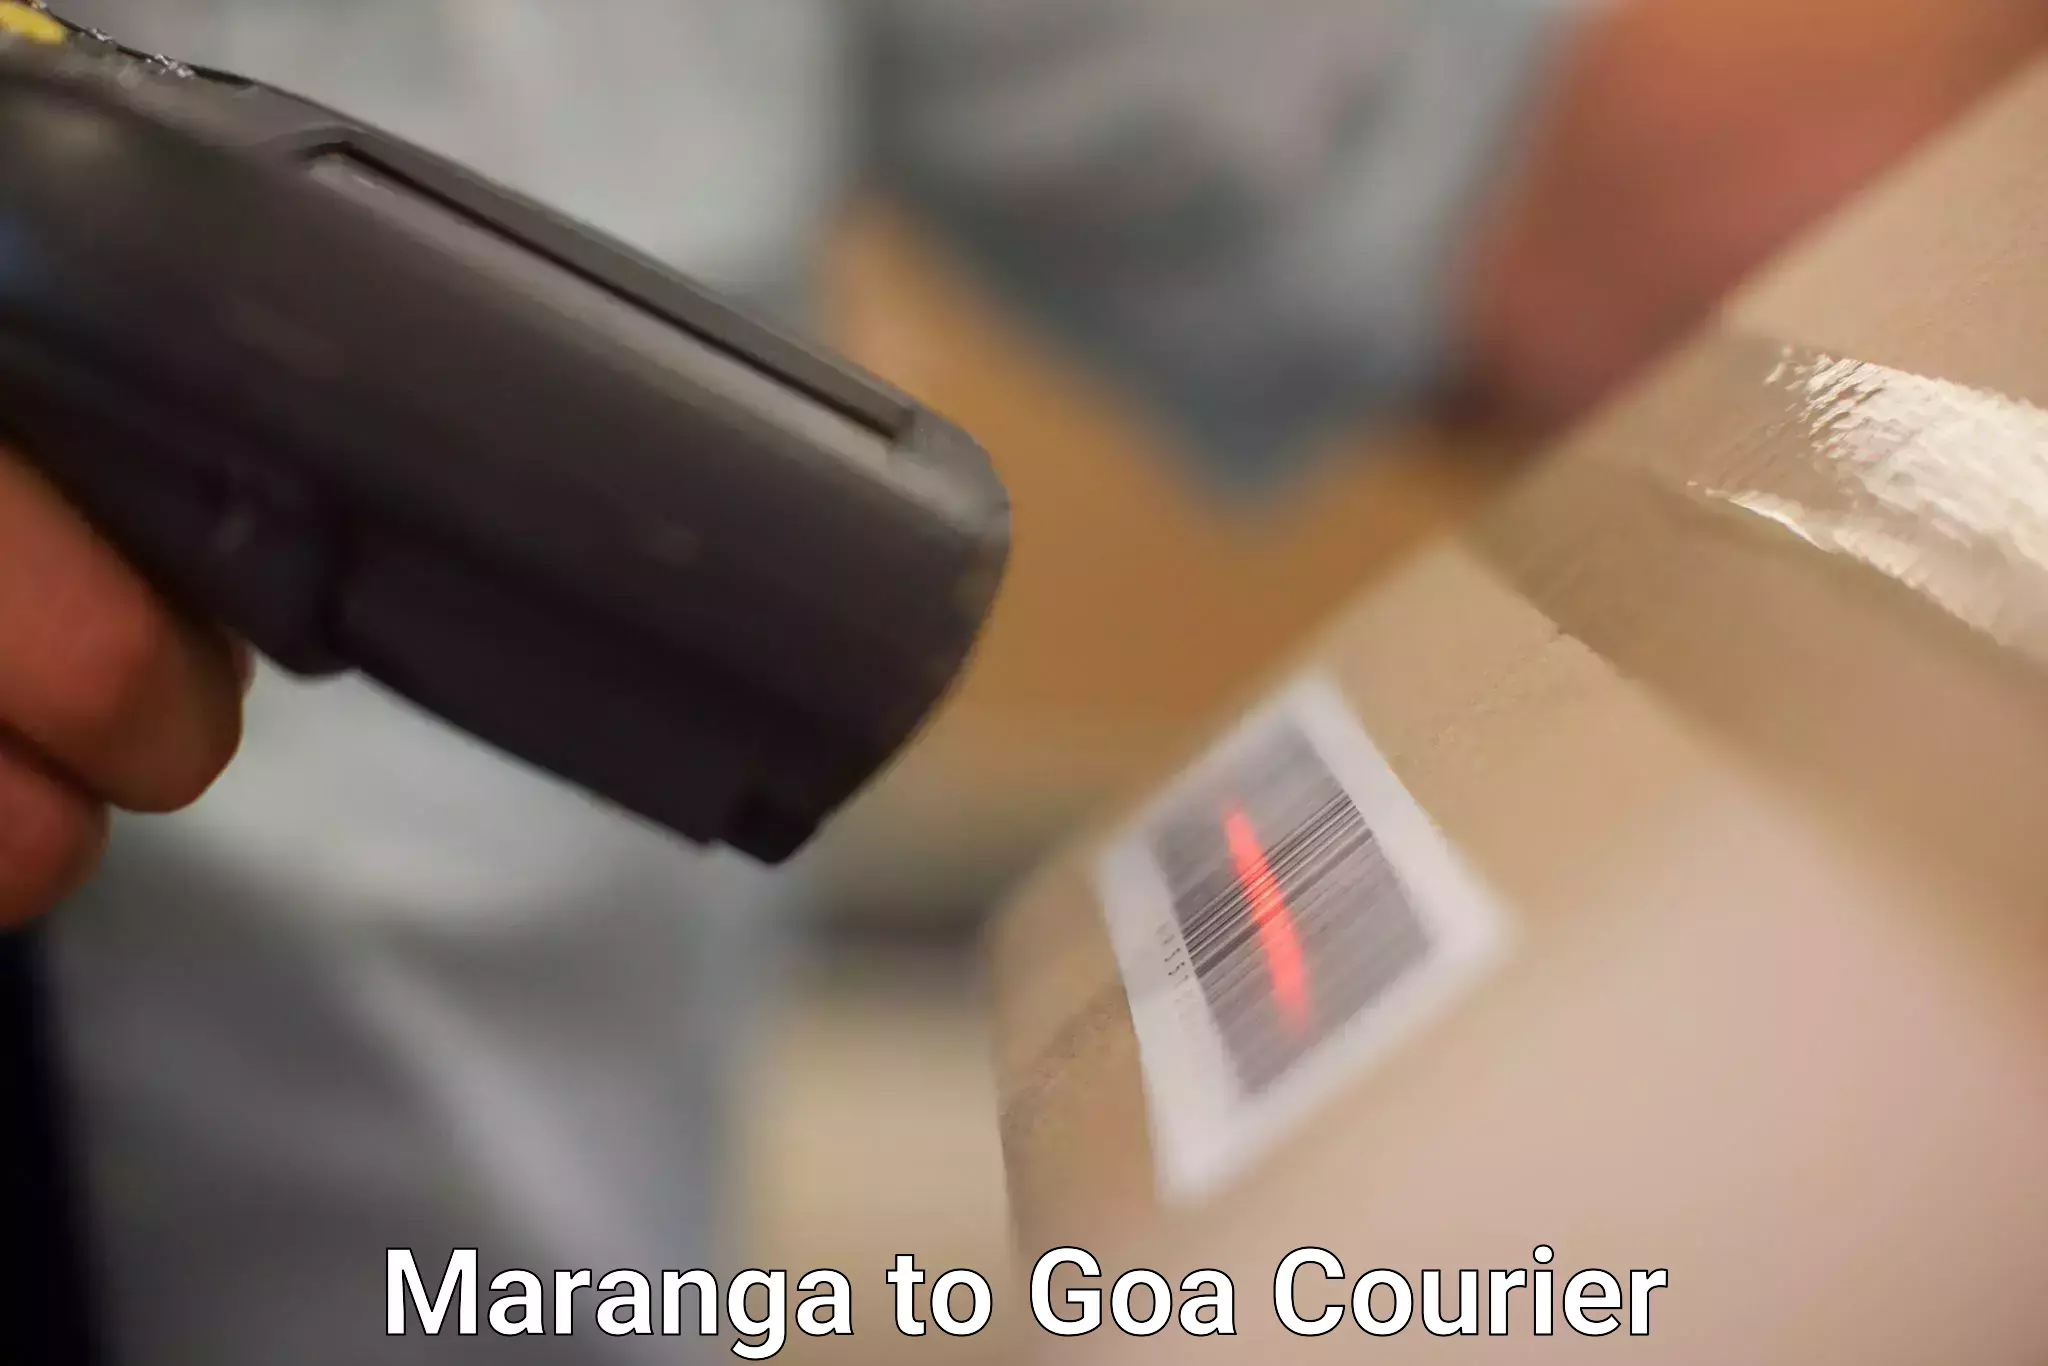 User-friendly courier app Maranga to South Goa